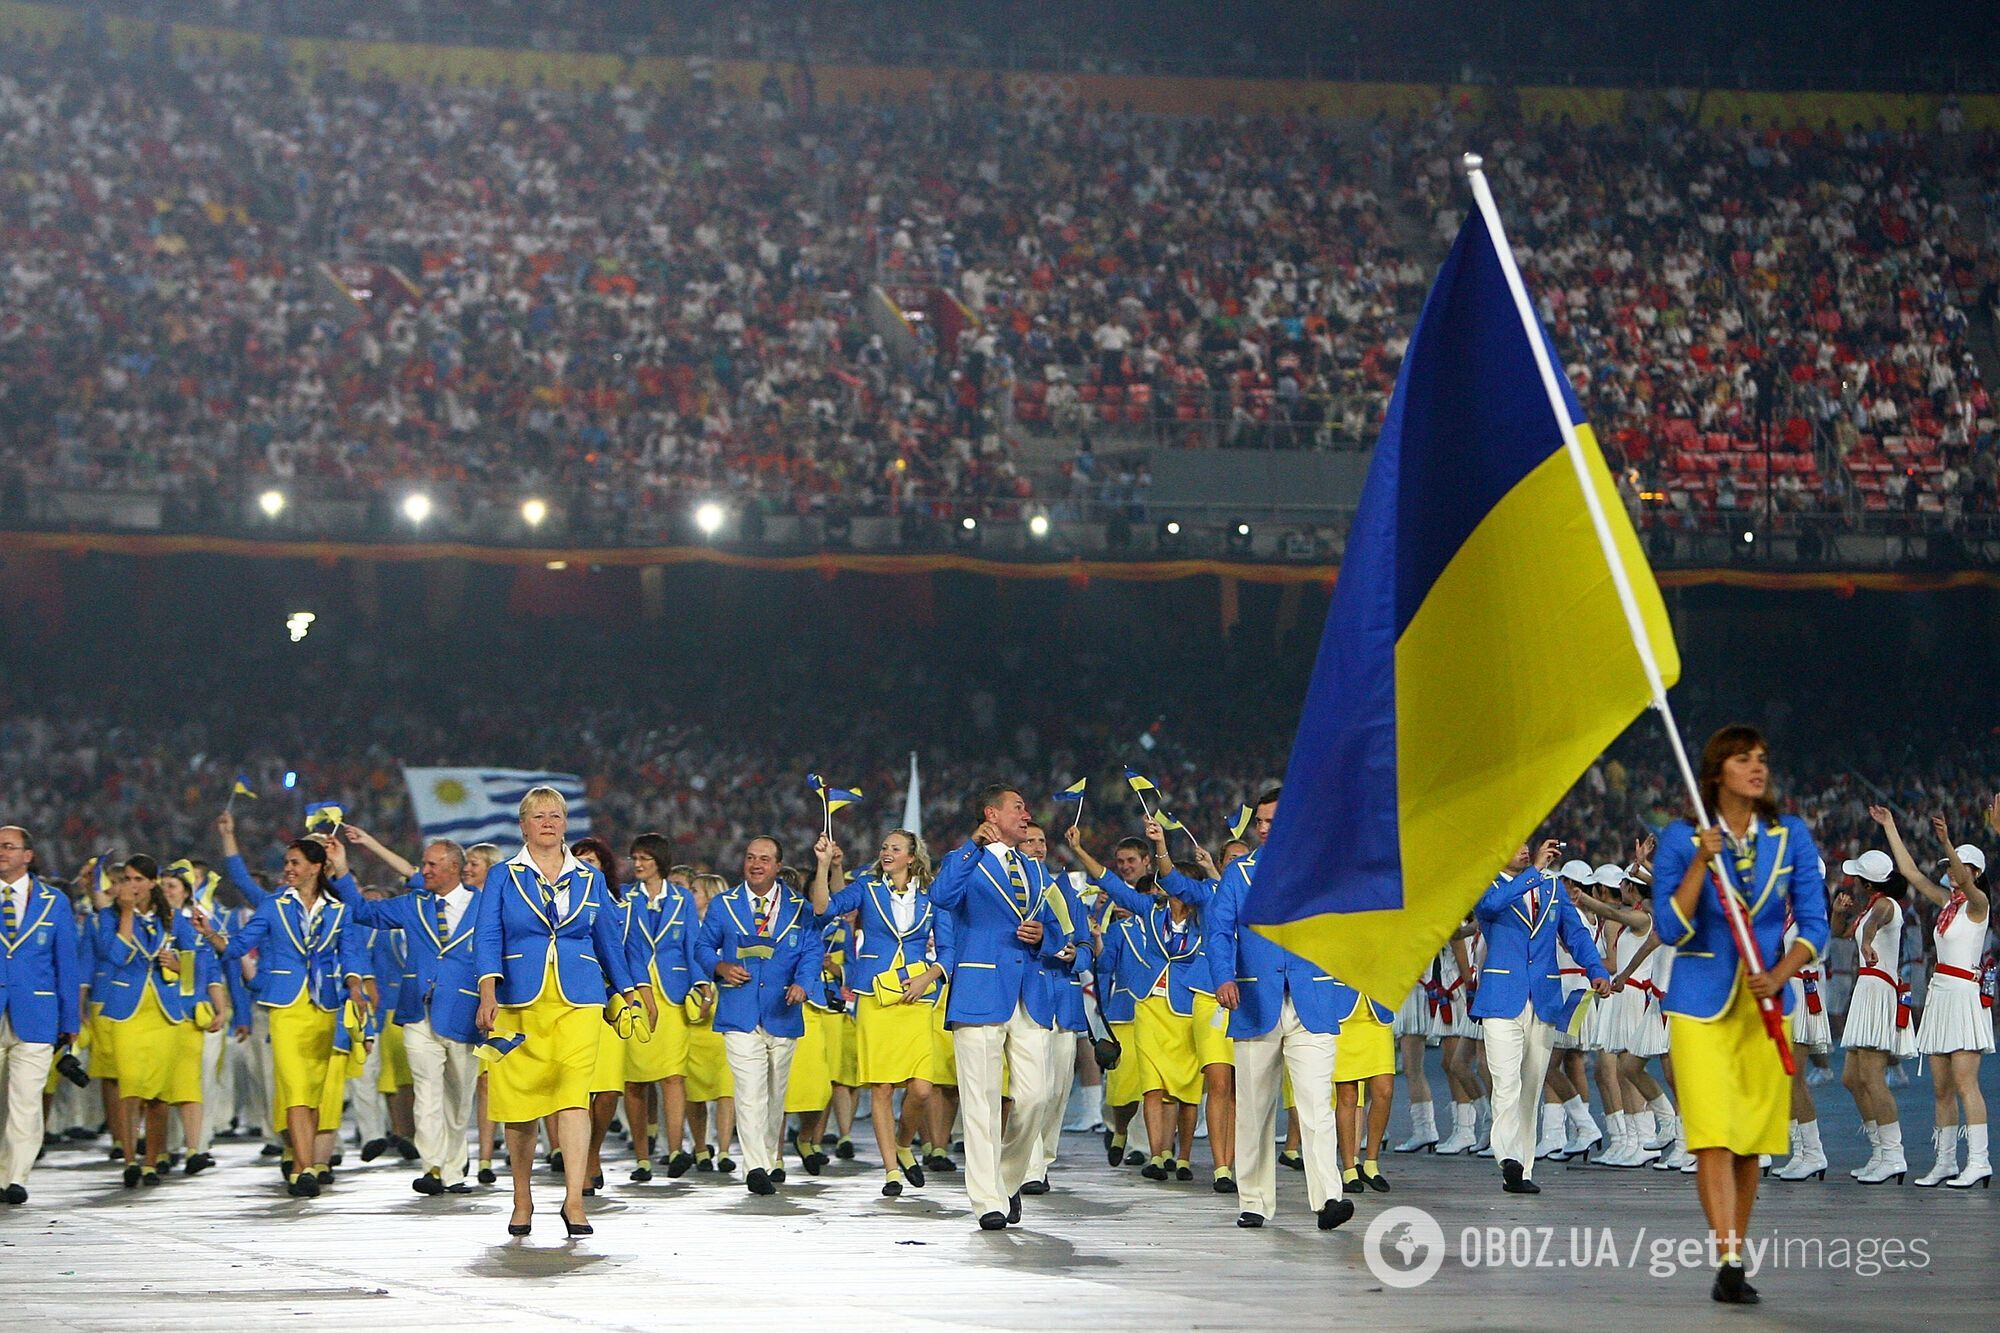 Сборная Украины на церемонии открытия на стадионе в Пекине в 2008 году